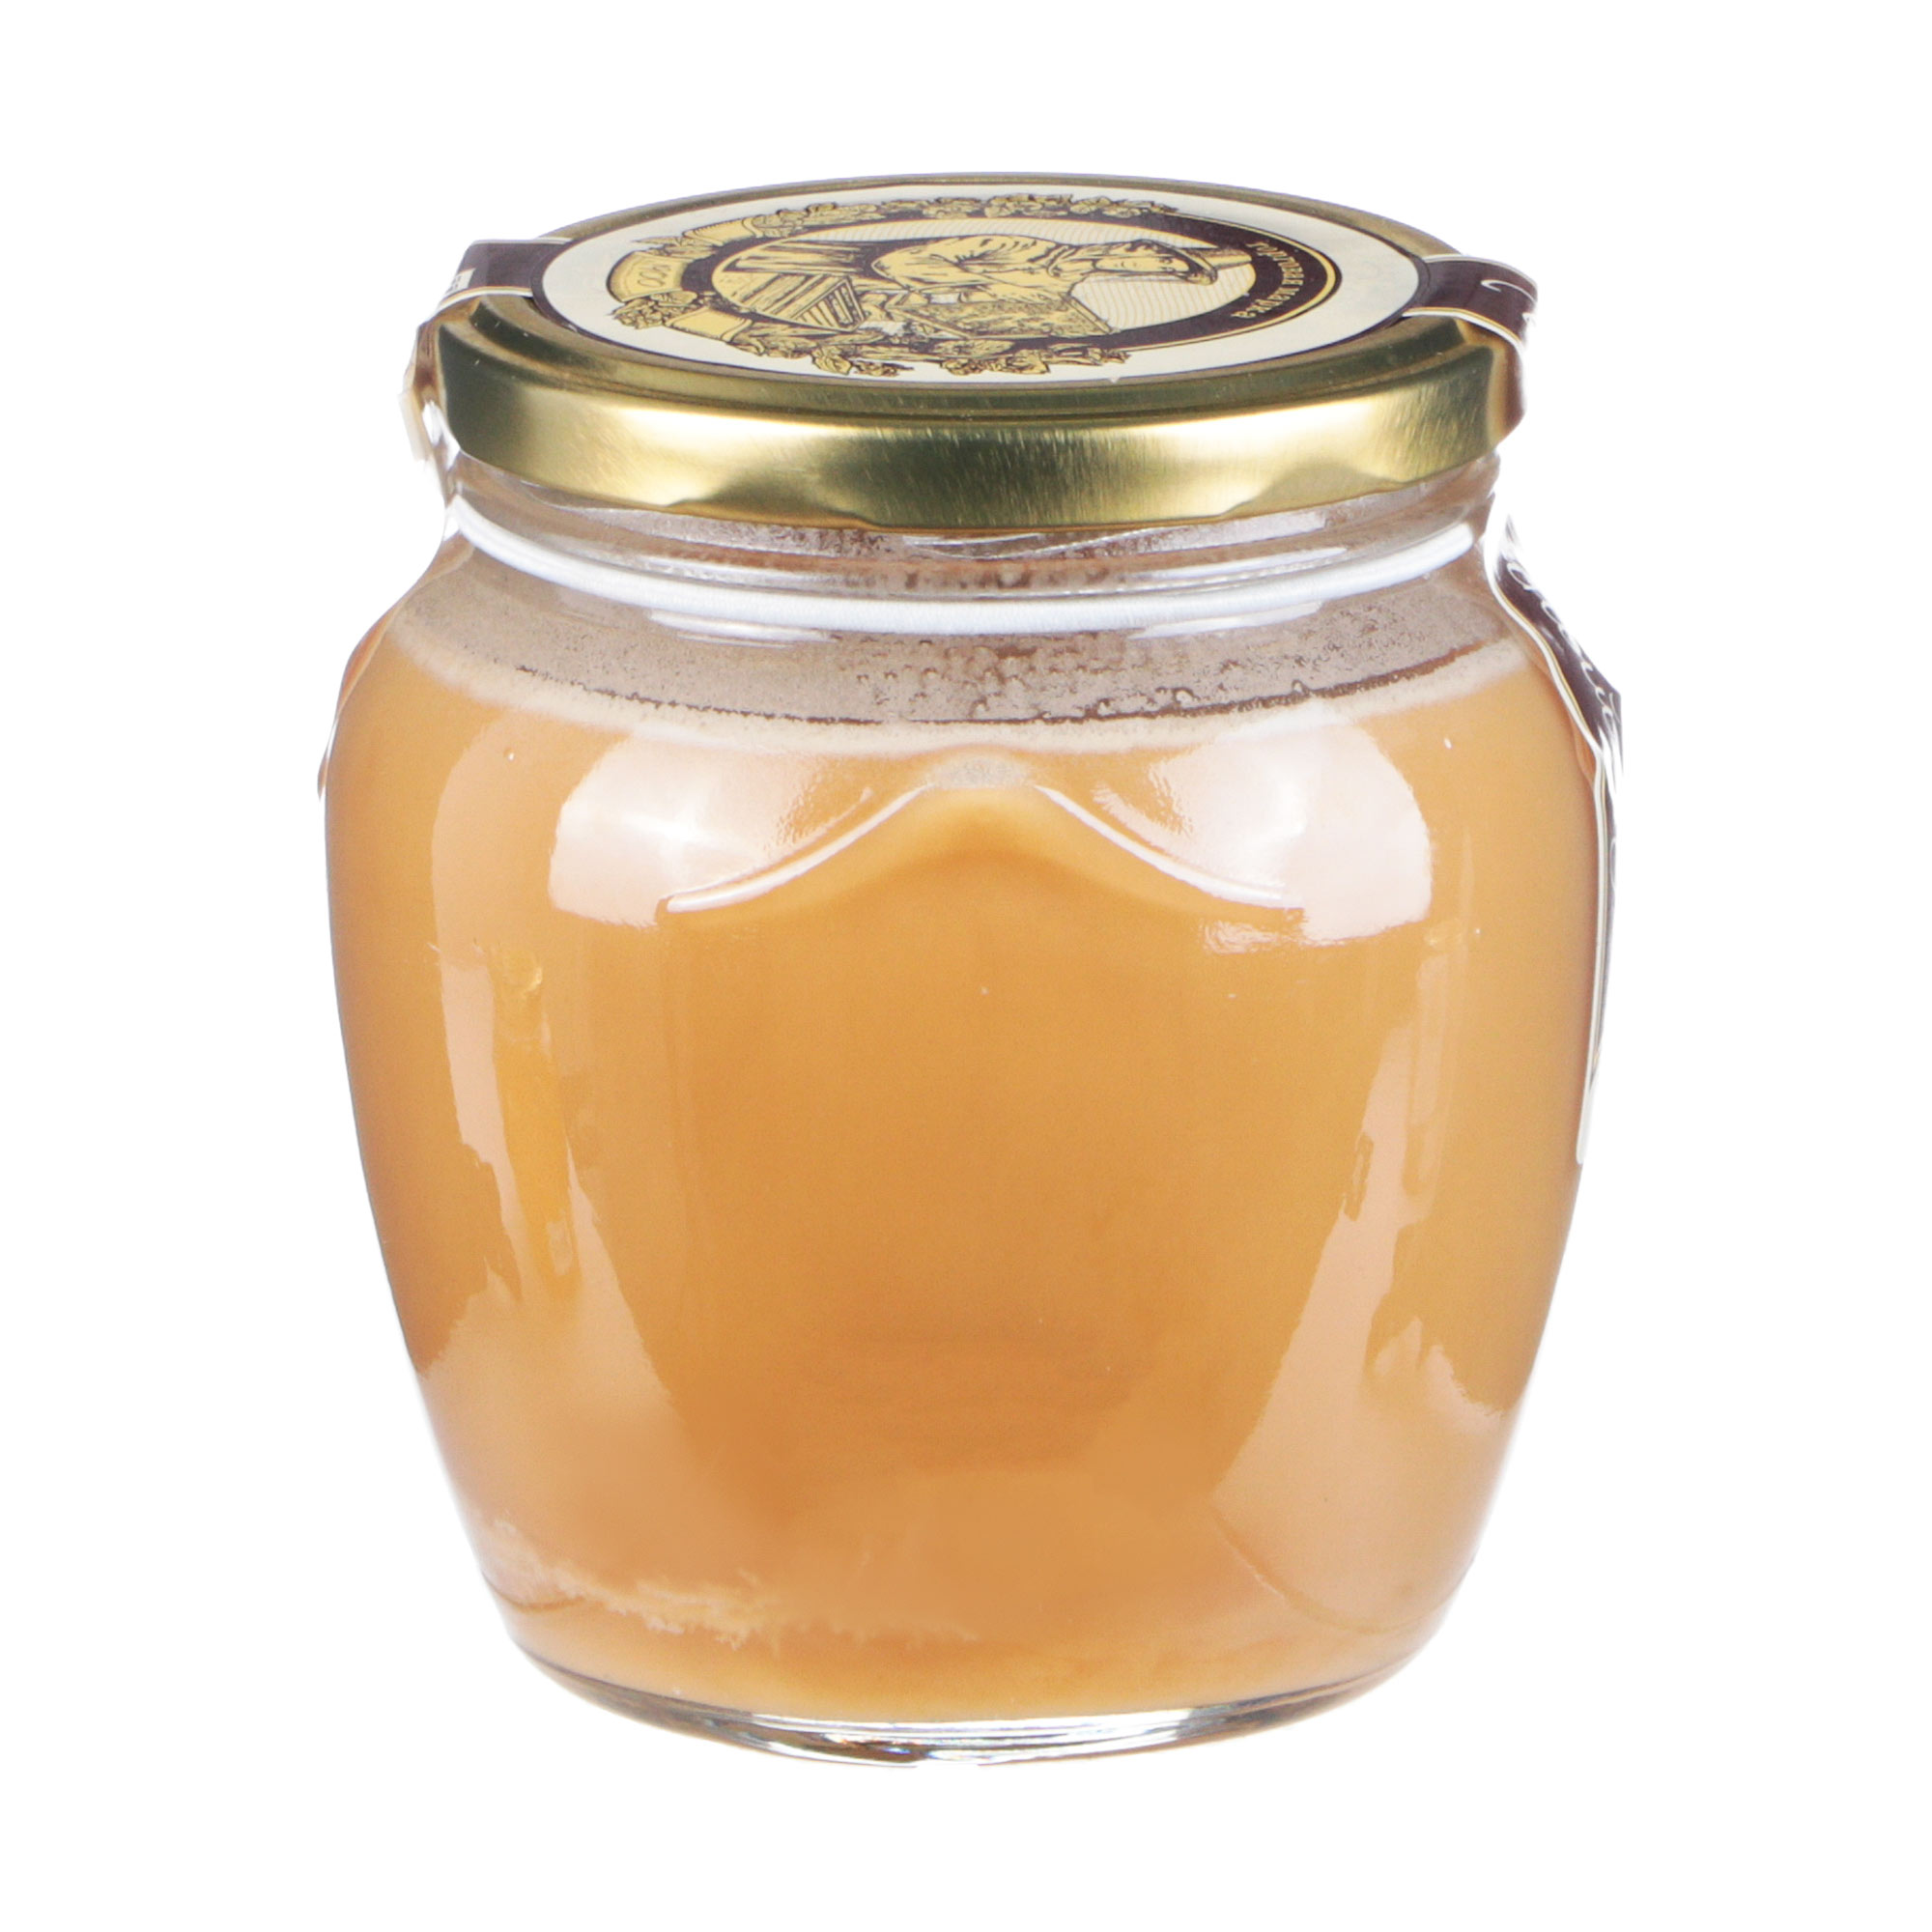 Мед Башкирские Пасеки Амфора цветочный, 650 г мед гречишный башкирские пасеки капля 350 г